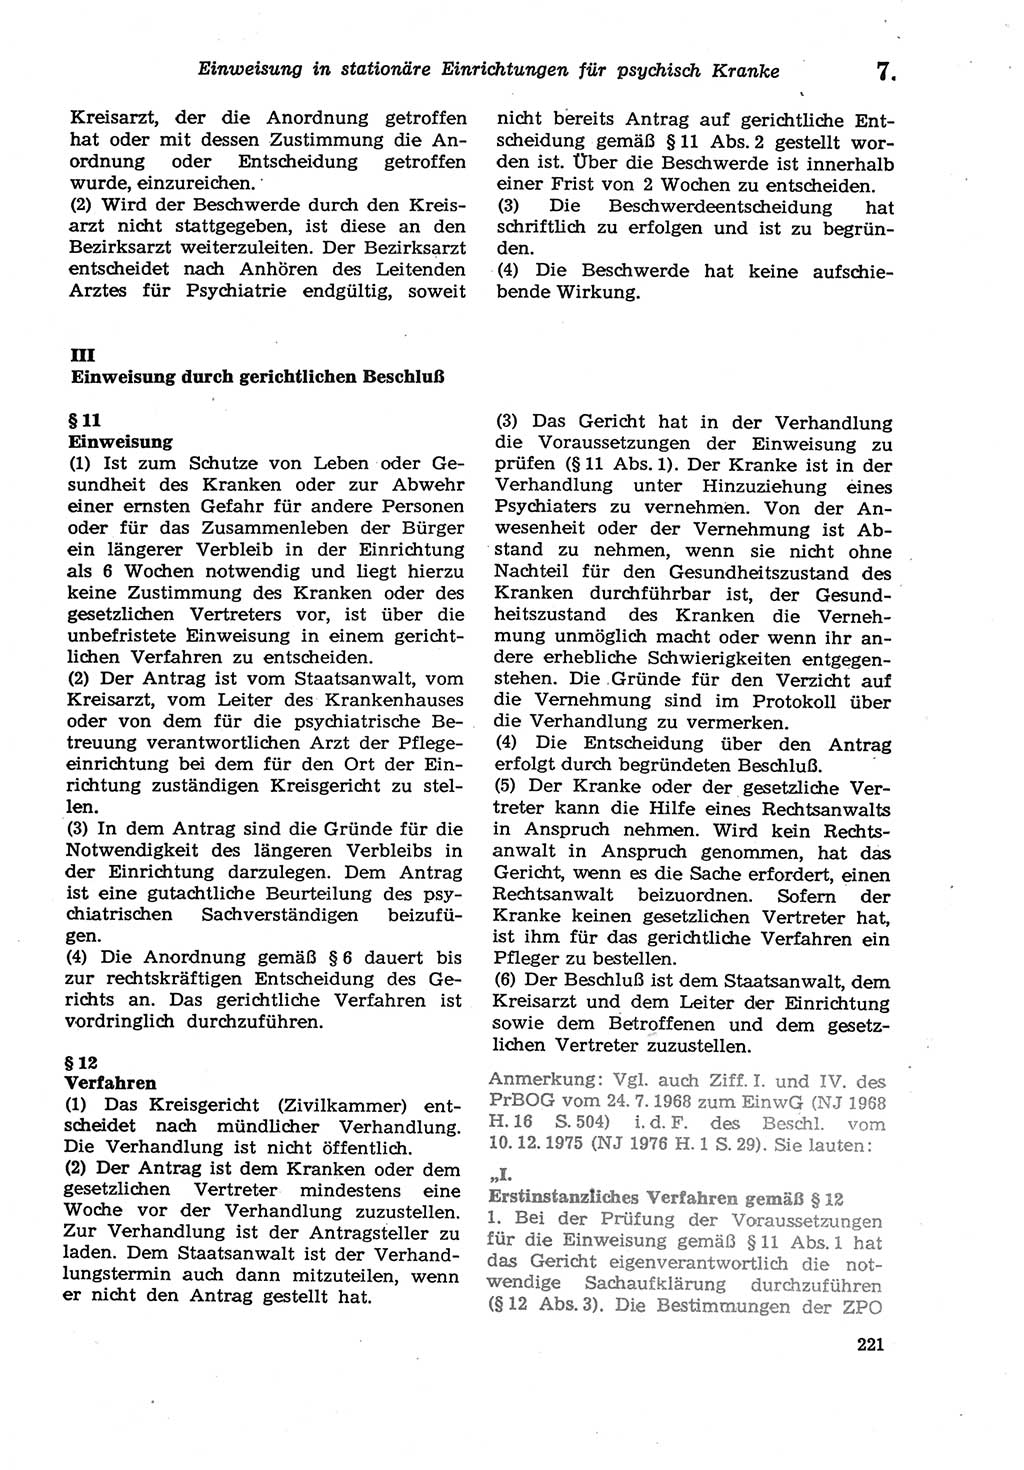 Strafprozeßordnung (StPO) der Deutschen Demokratischen Republik (DDR) sowie angrenzende Gesetze und Bestimmungen 1979, Seite 221 (StPO DDR Ges. Best. 1979, S. 221)